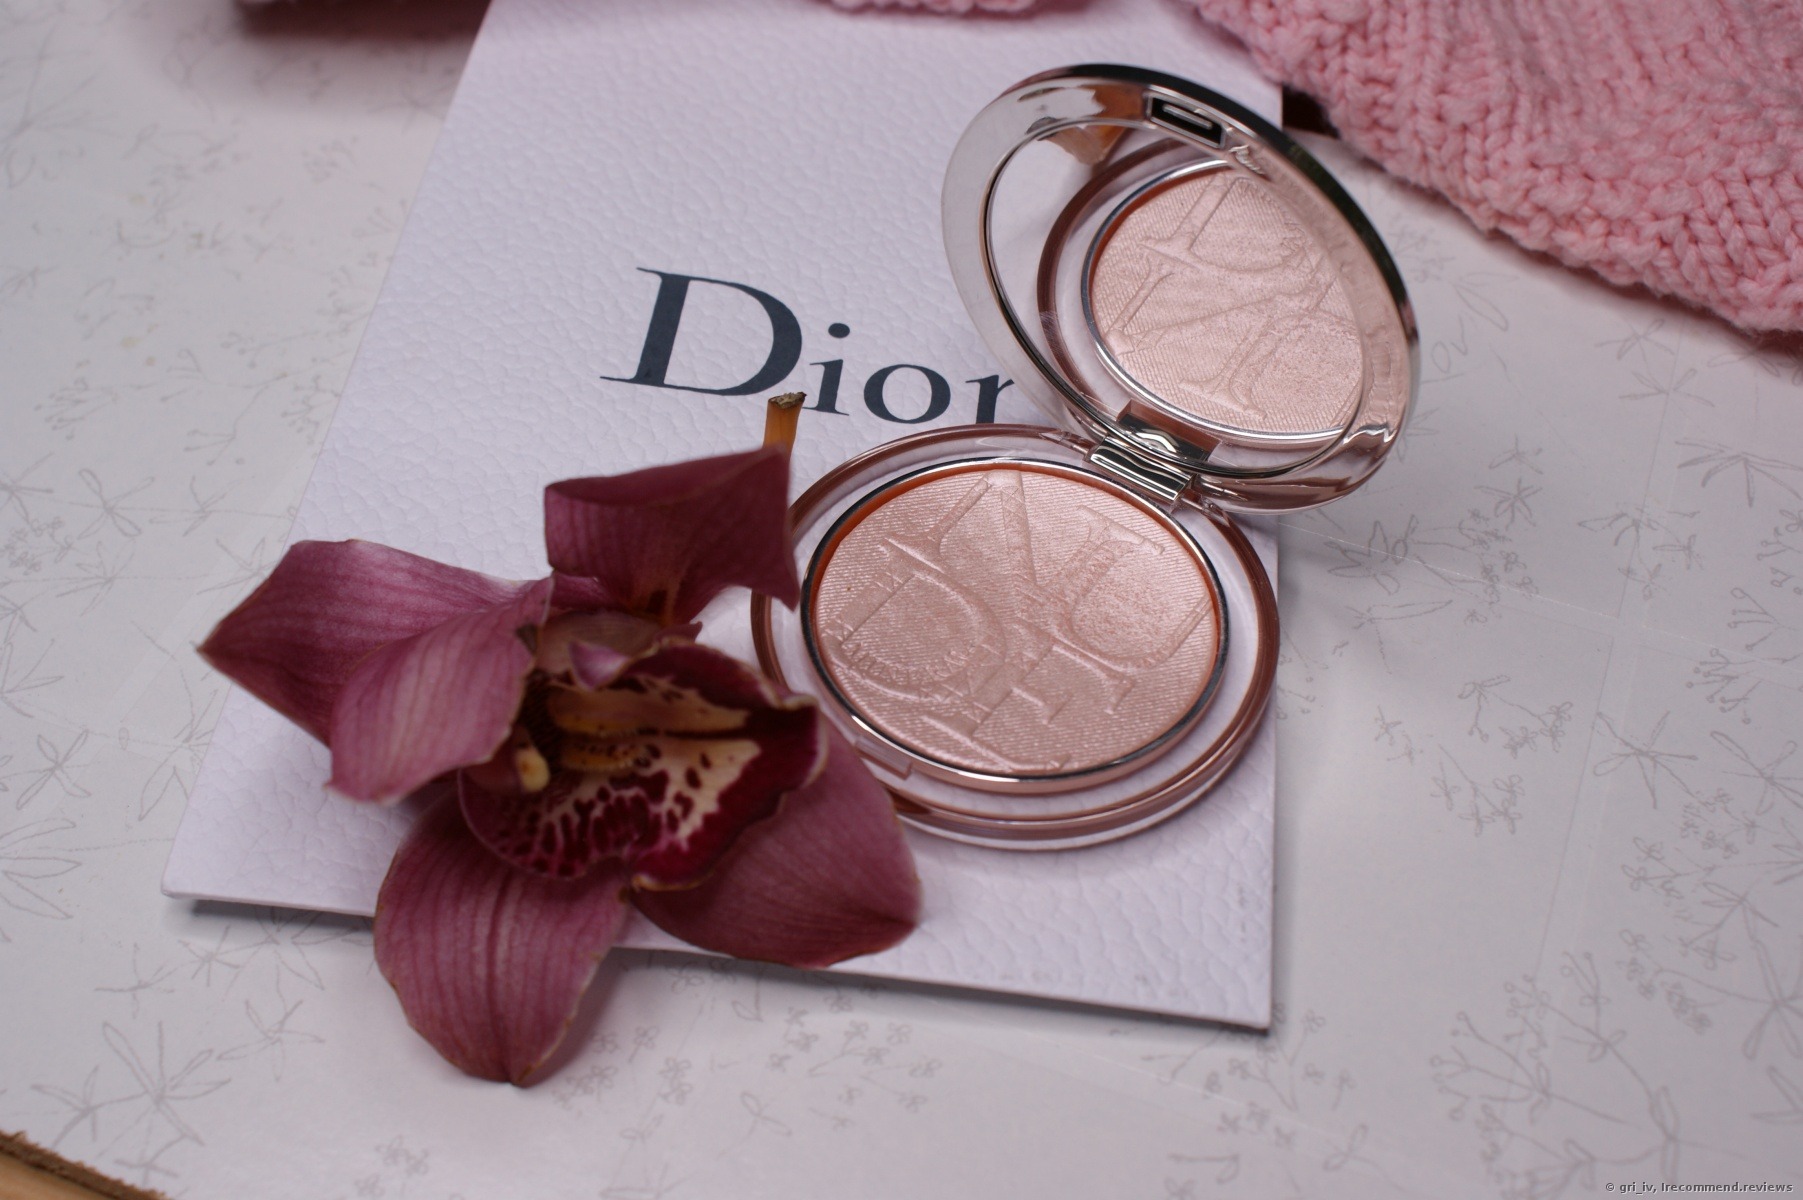 Dior Diorskin Nude Luminizer Shimmering Glow Powder.